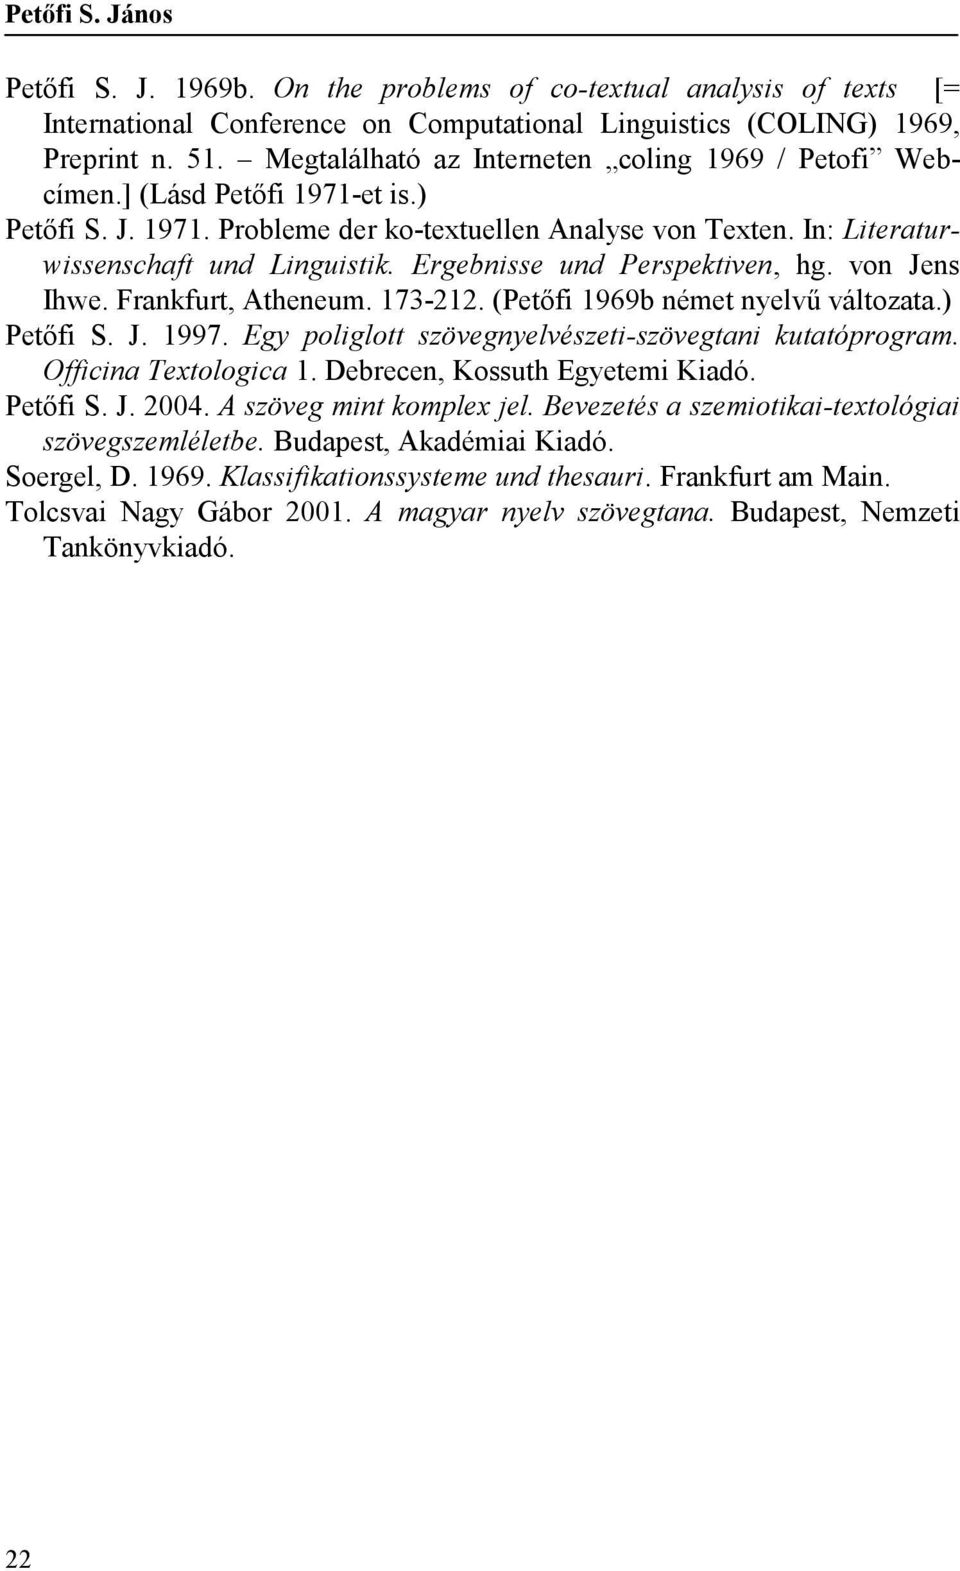 Ergebnisse und Perspektiven, hg. von Jens Ihwe. Frankfurt, Atheneum. 173-212. (Petőfi 1969b német nyelvű változata.) Petőfi S. J. 1997. Egy poliglott szövegnyelvészeti-szövegtani kutatóprogram.